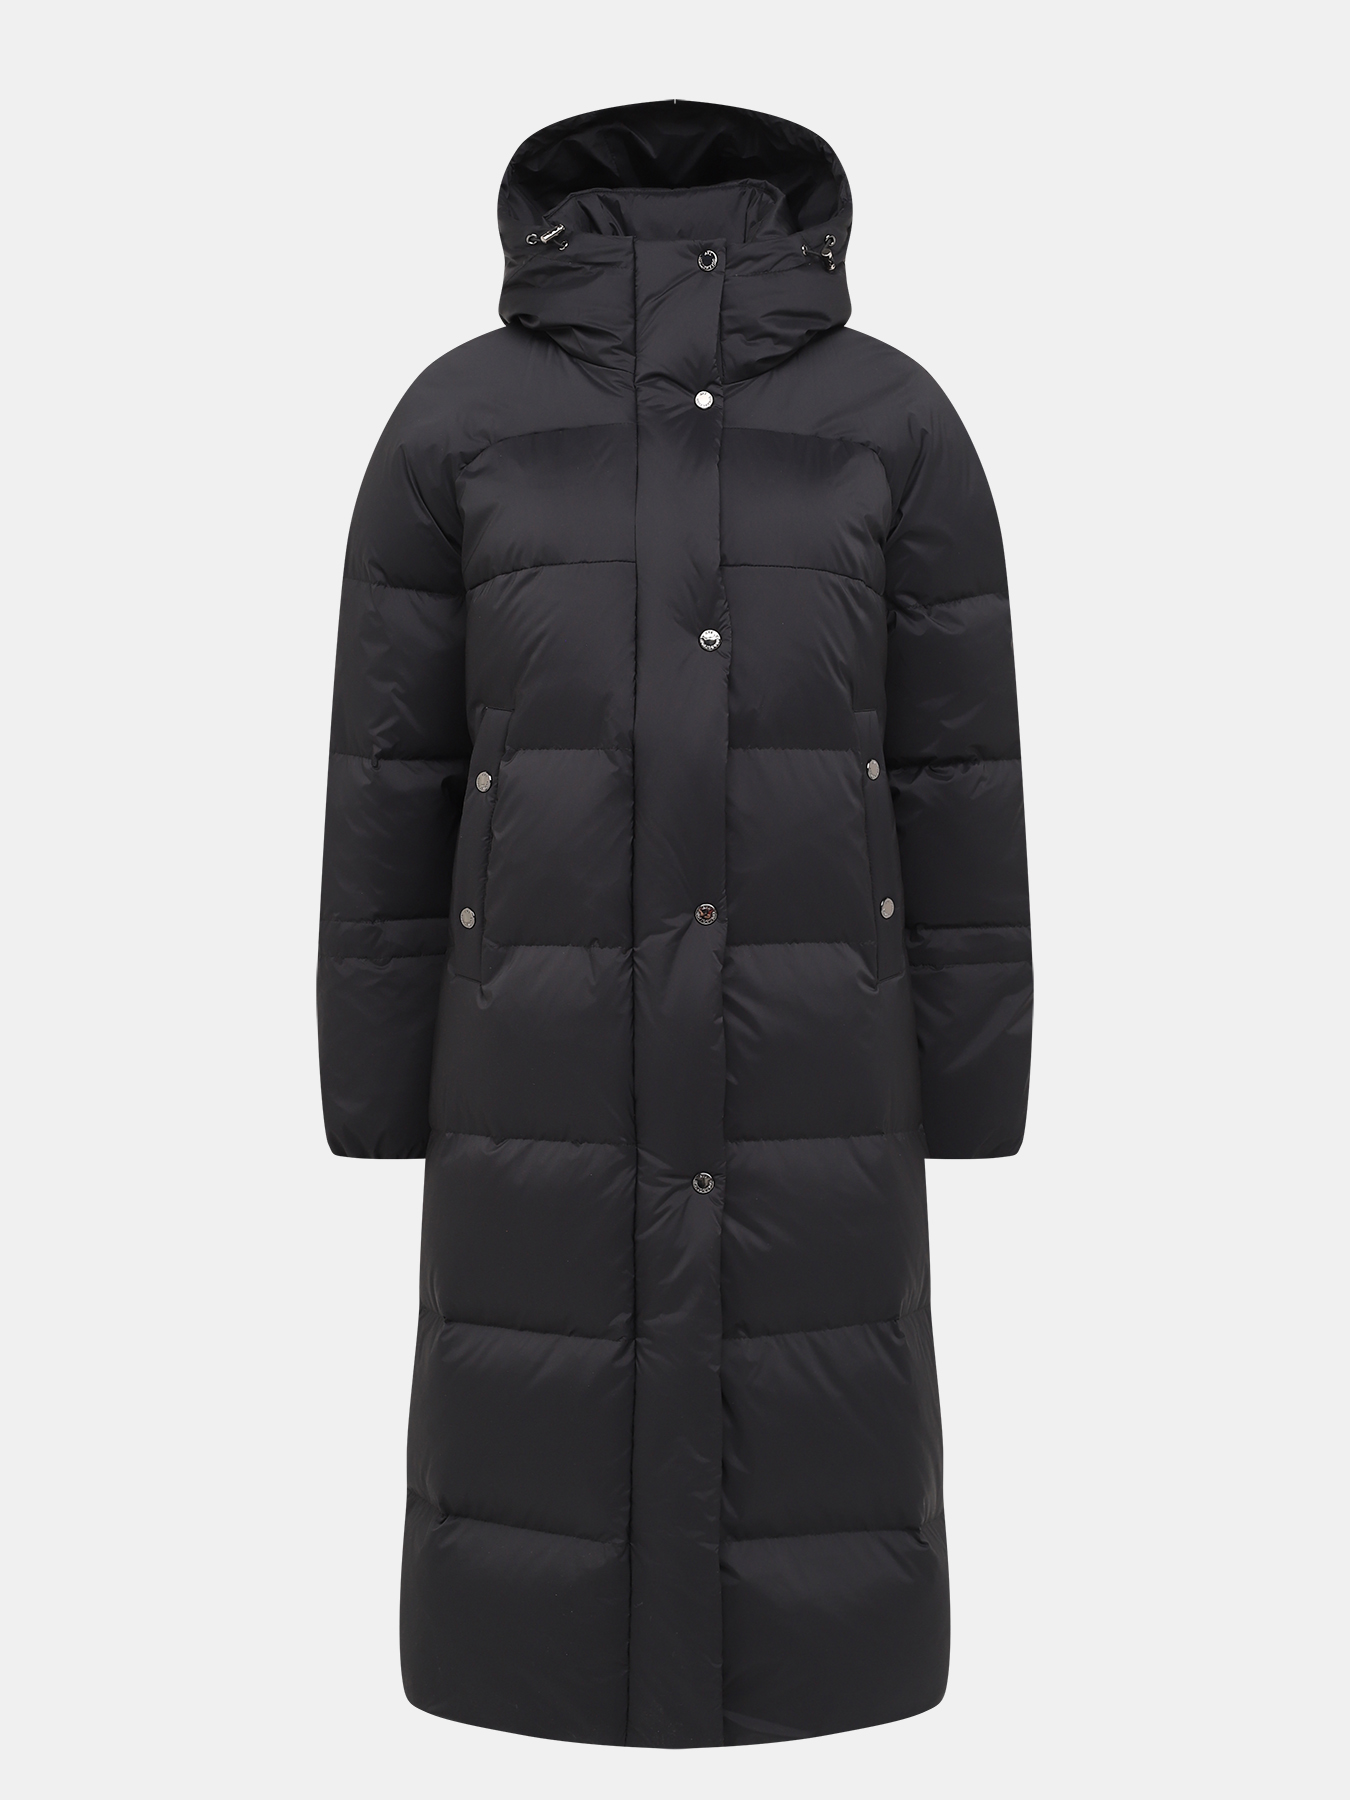 Пальто зимнее AVI 433511-027, цвет темно-серый, размер 52